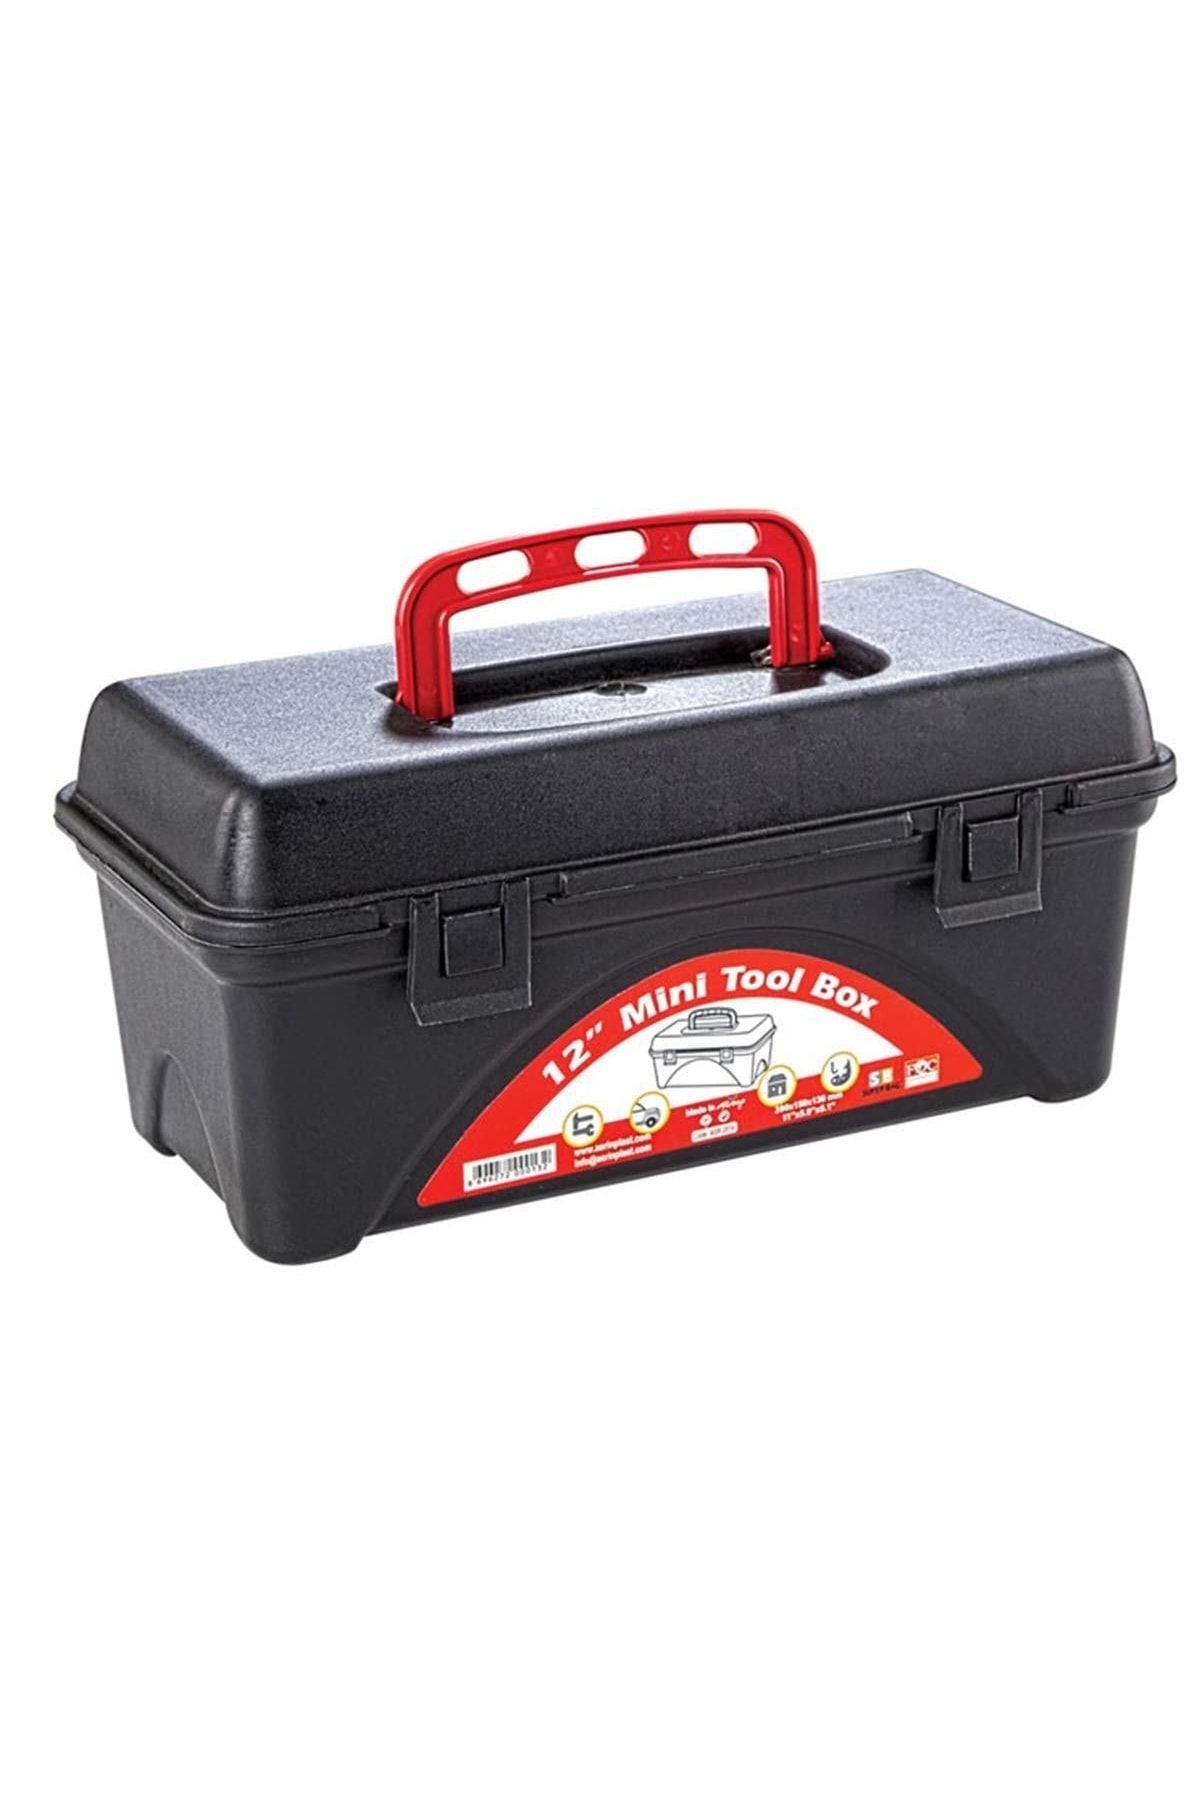 Süper Bag 12" Mini Tool Box Balıkçı Malzeme Kutusu